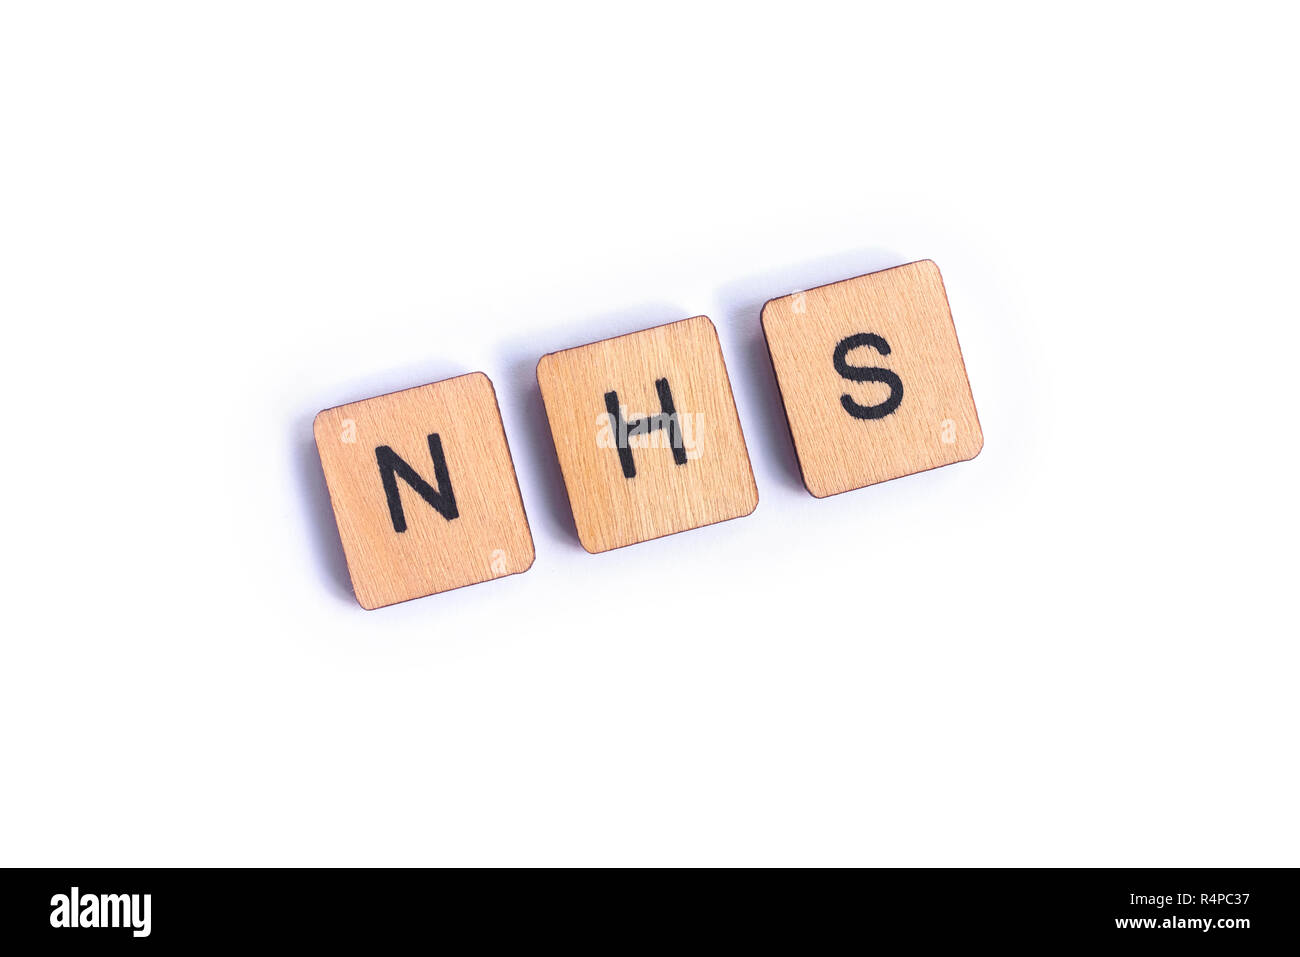 Londres, UK - 7 juillet 2018 : l'abréviation NHS - National Health Service - l'épeautre avec lettre en bois, tuiles de SCRABBLE le 7 juillet 2018. Banque D'Images